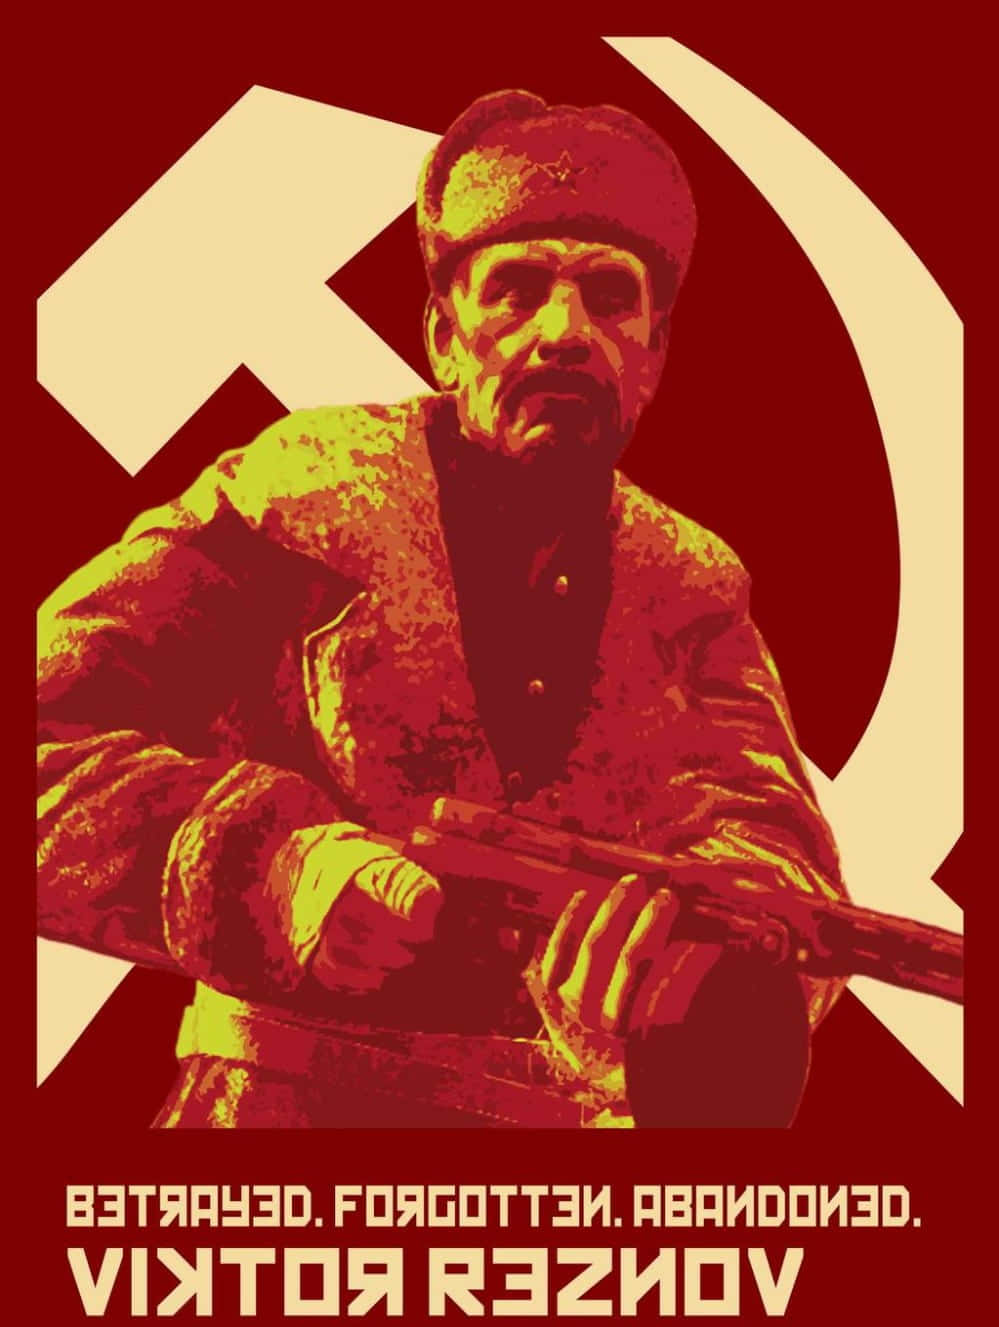 Viktor Reznov: The Legendary Call of Duty Character Wallpaper